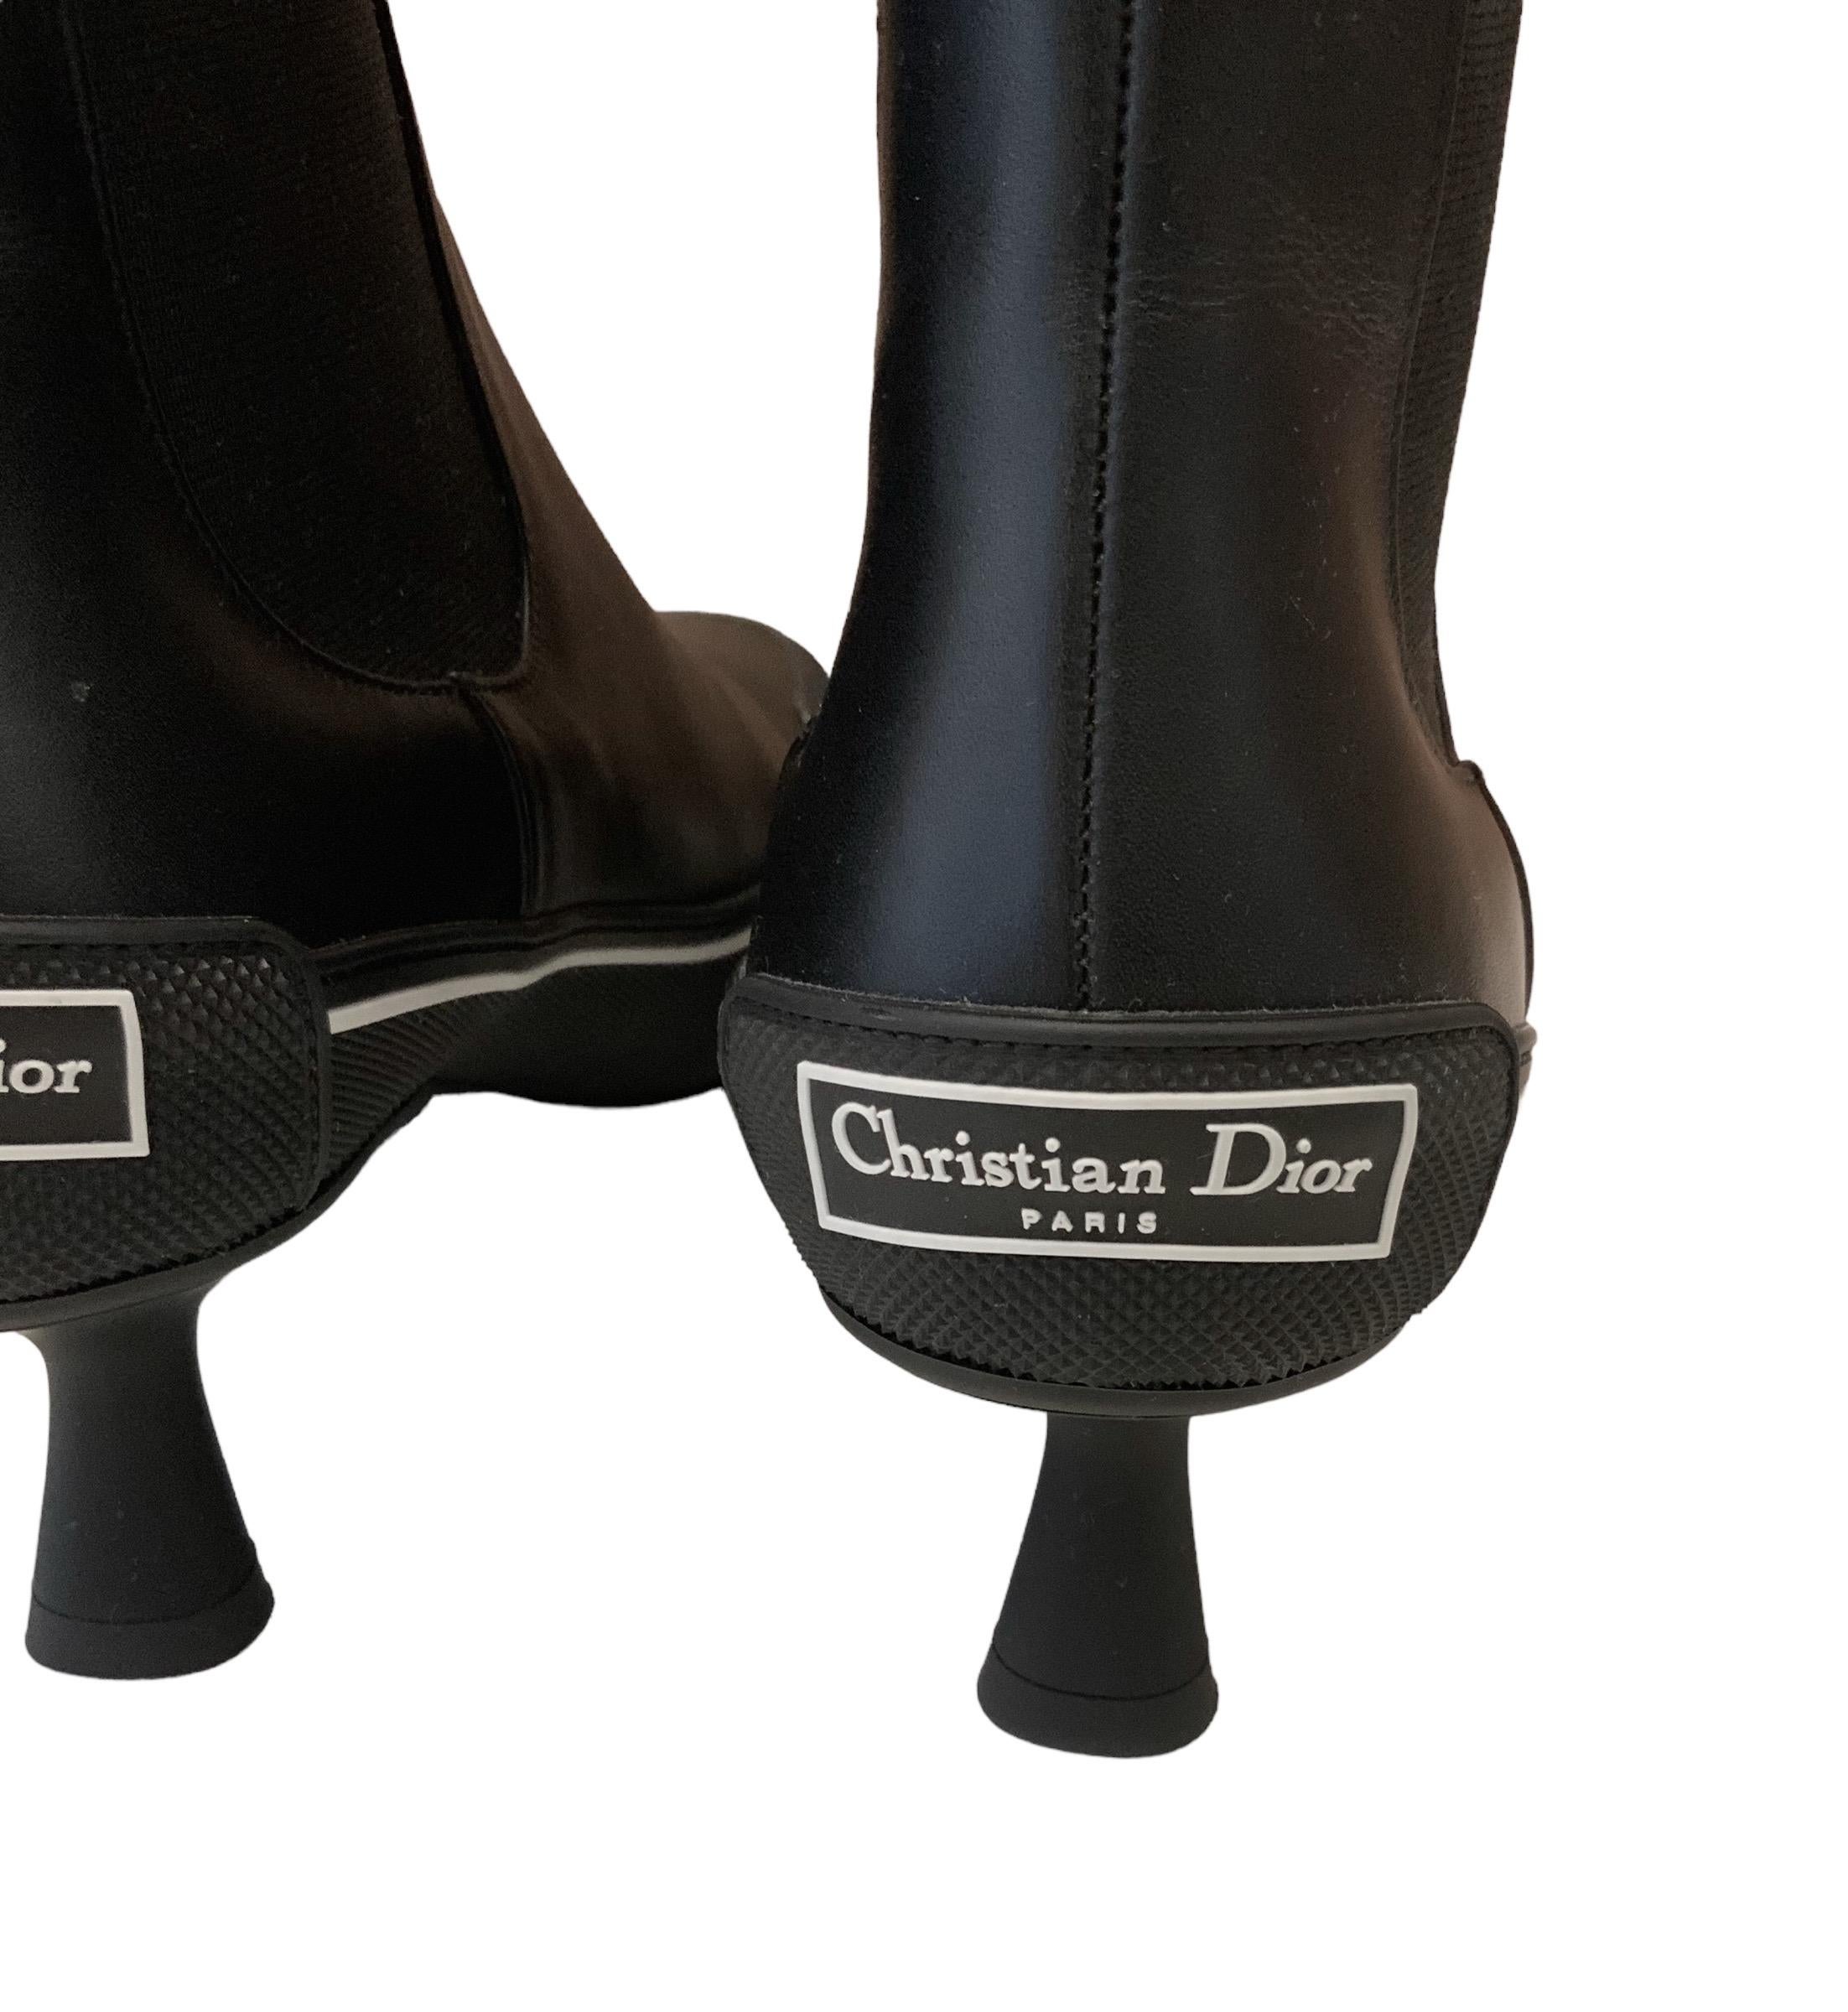 Diese gebrauchte, aber neue D-Motion-Stiefelette mit Absatz zeichnet sich durch ein hybrides Design aus, das einen Chelsea-Stiefel mit Elementen aus der Sportbekleidung kombiniert. 
Gefertigt aus schwarzem, geschmeidigem Kalbsleder mit